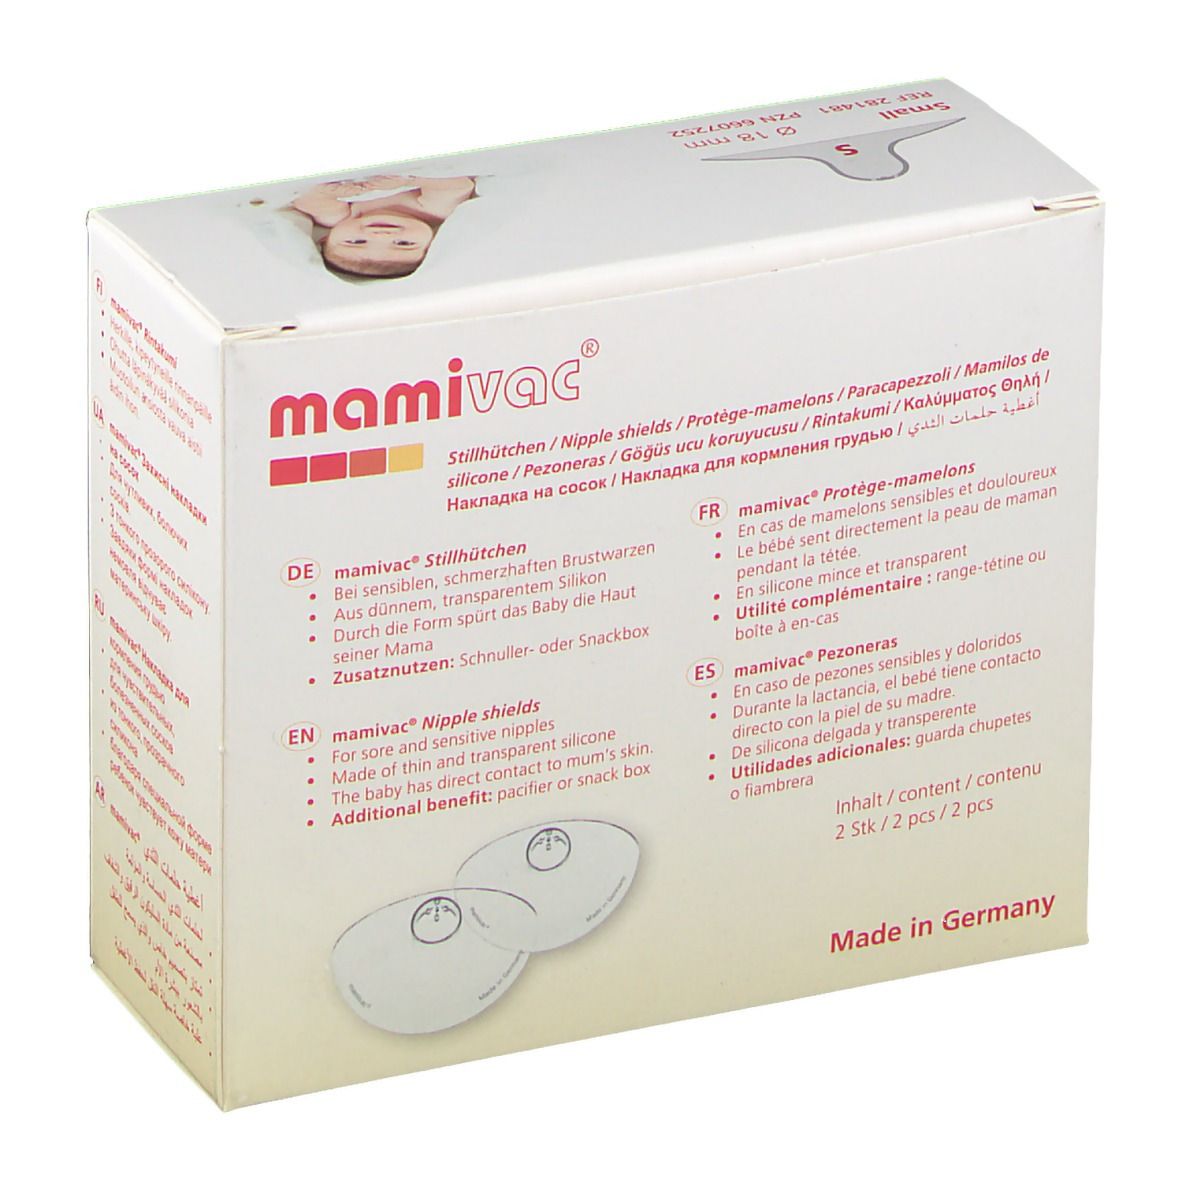 mamivac® Brusthütchen Klein